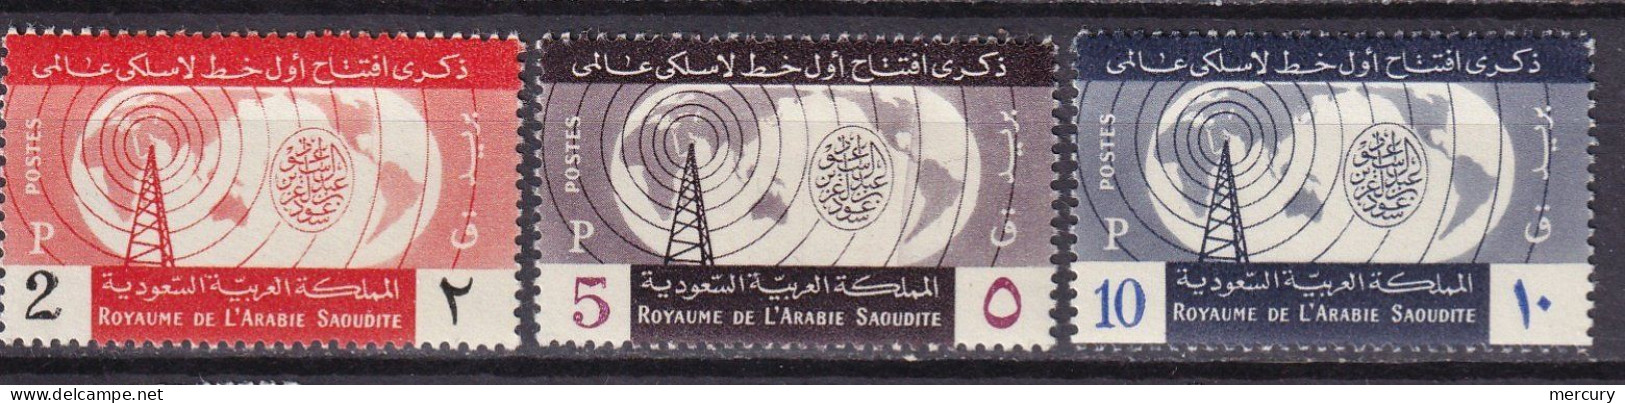 Radio-Ryad - Arabie Saoudite